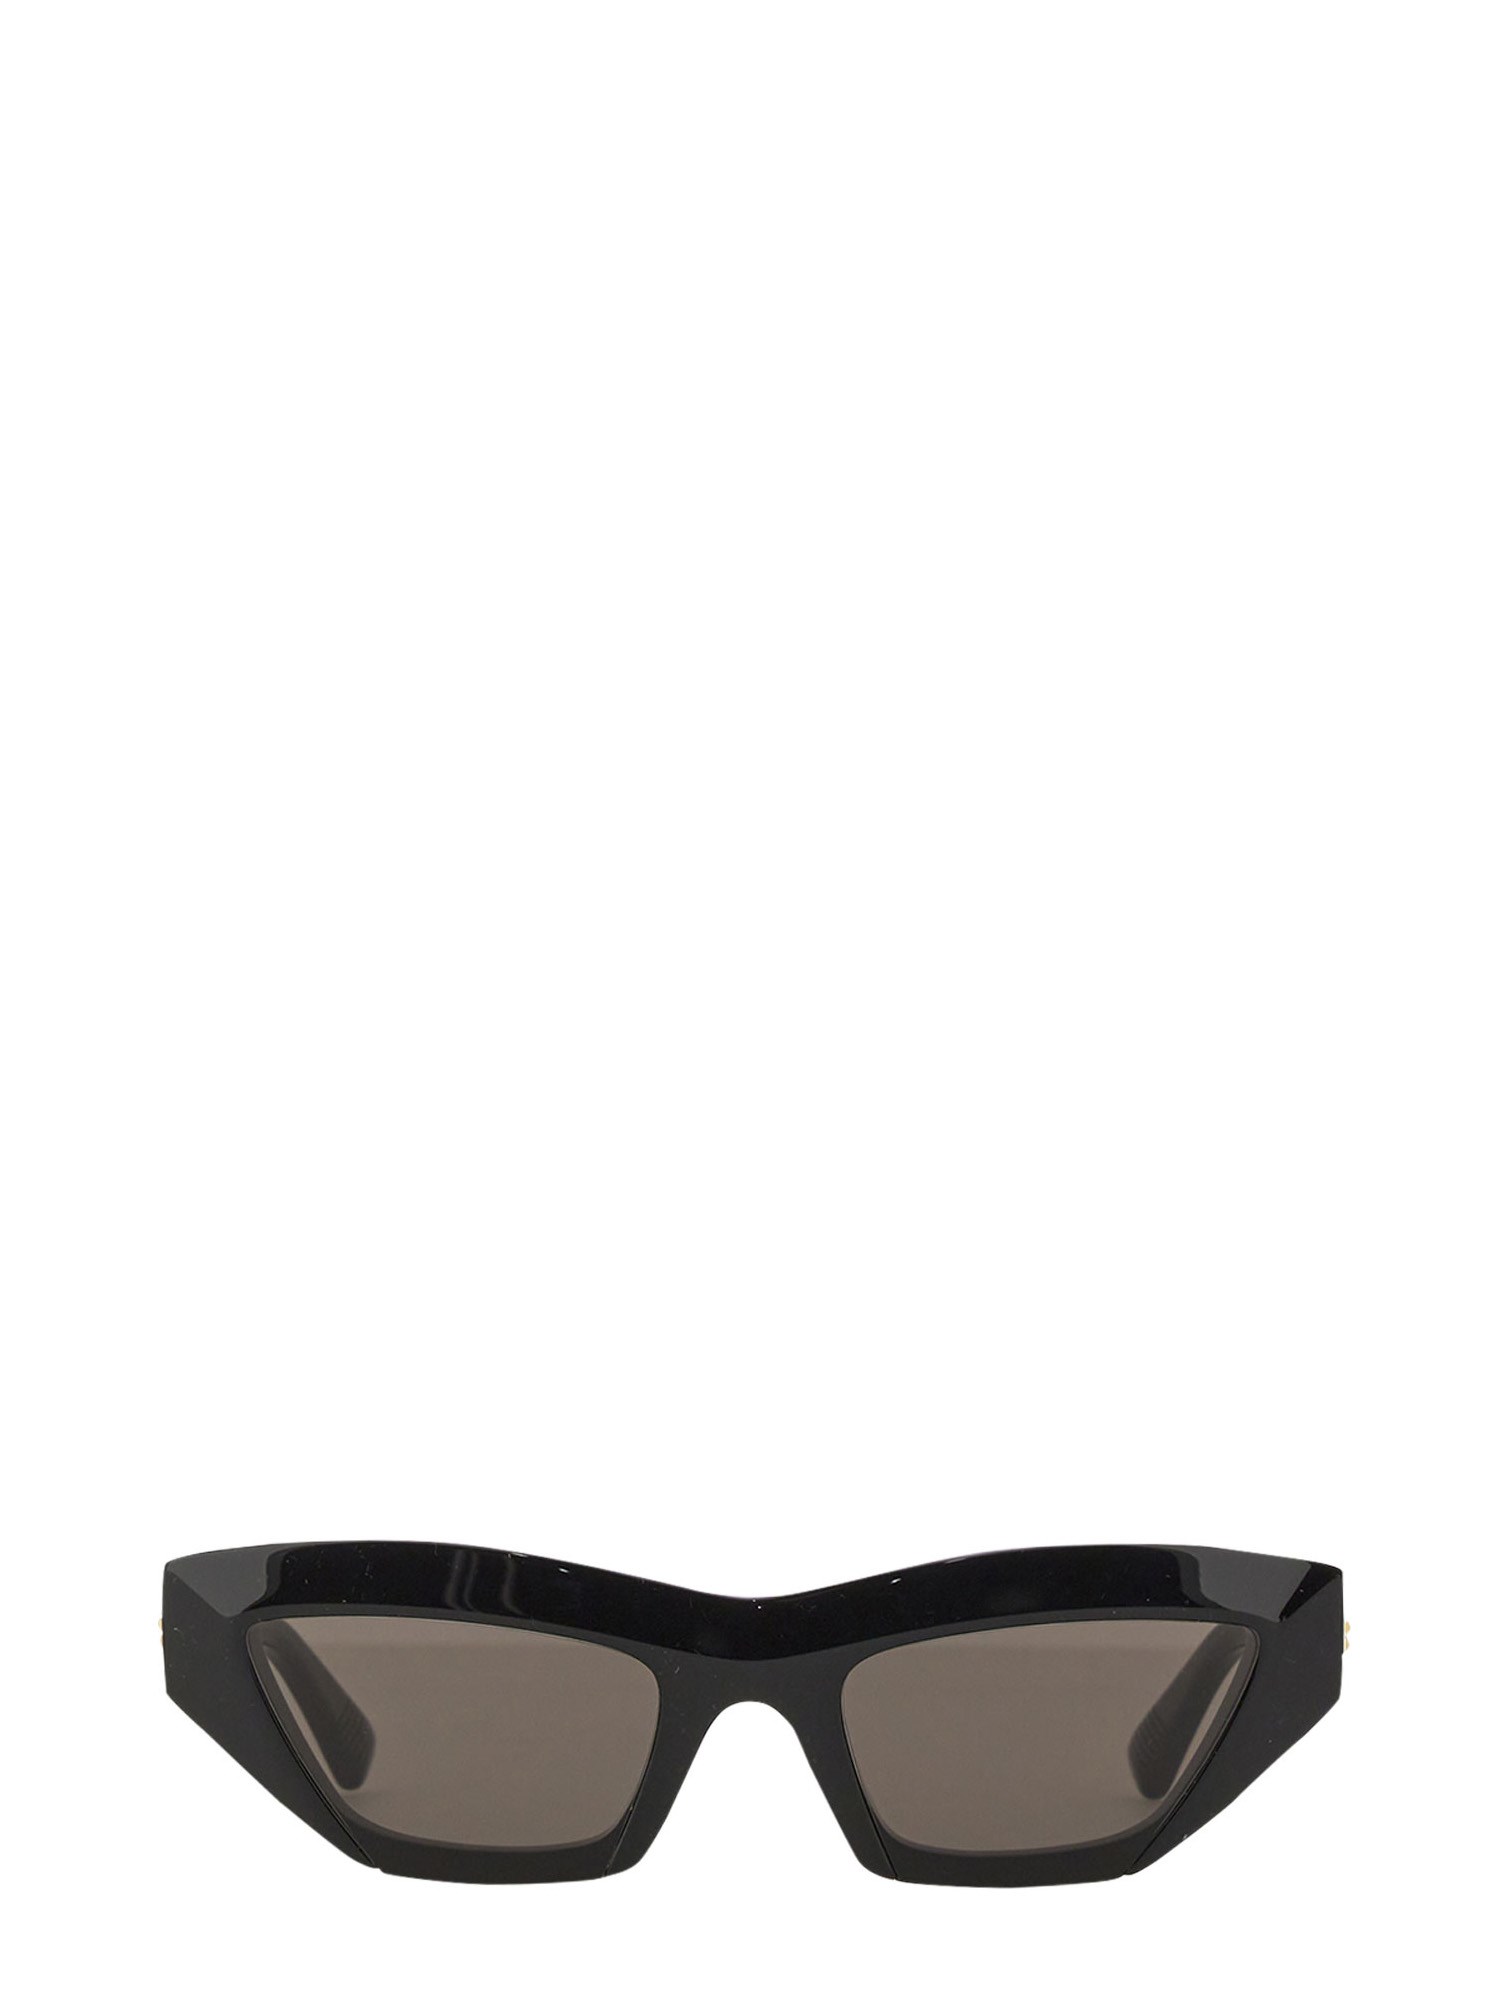 bottega veneta sculptured cat eye sunglasses